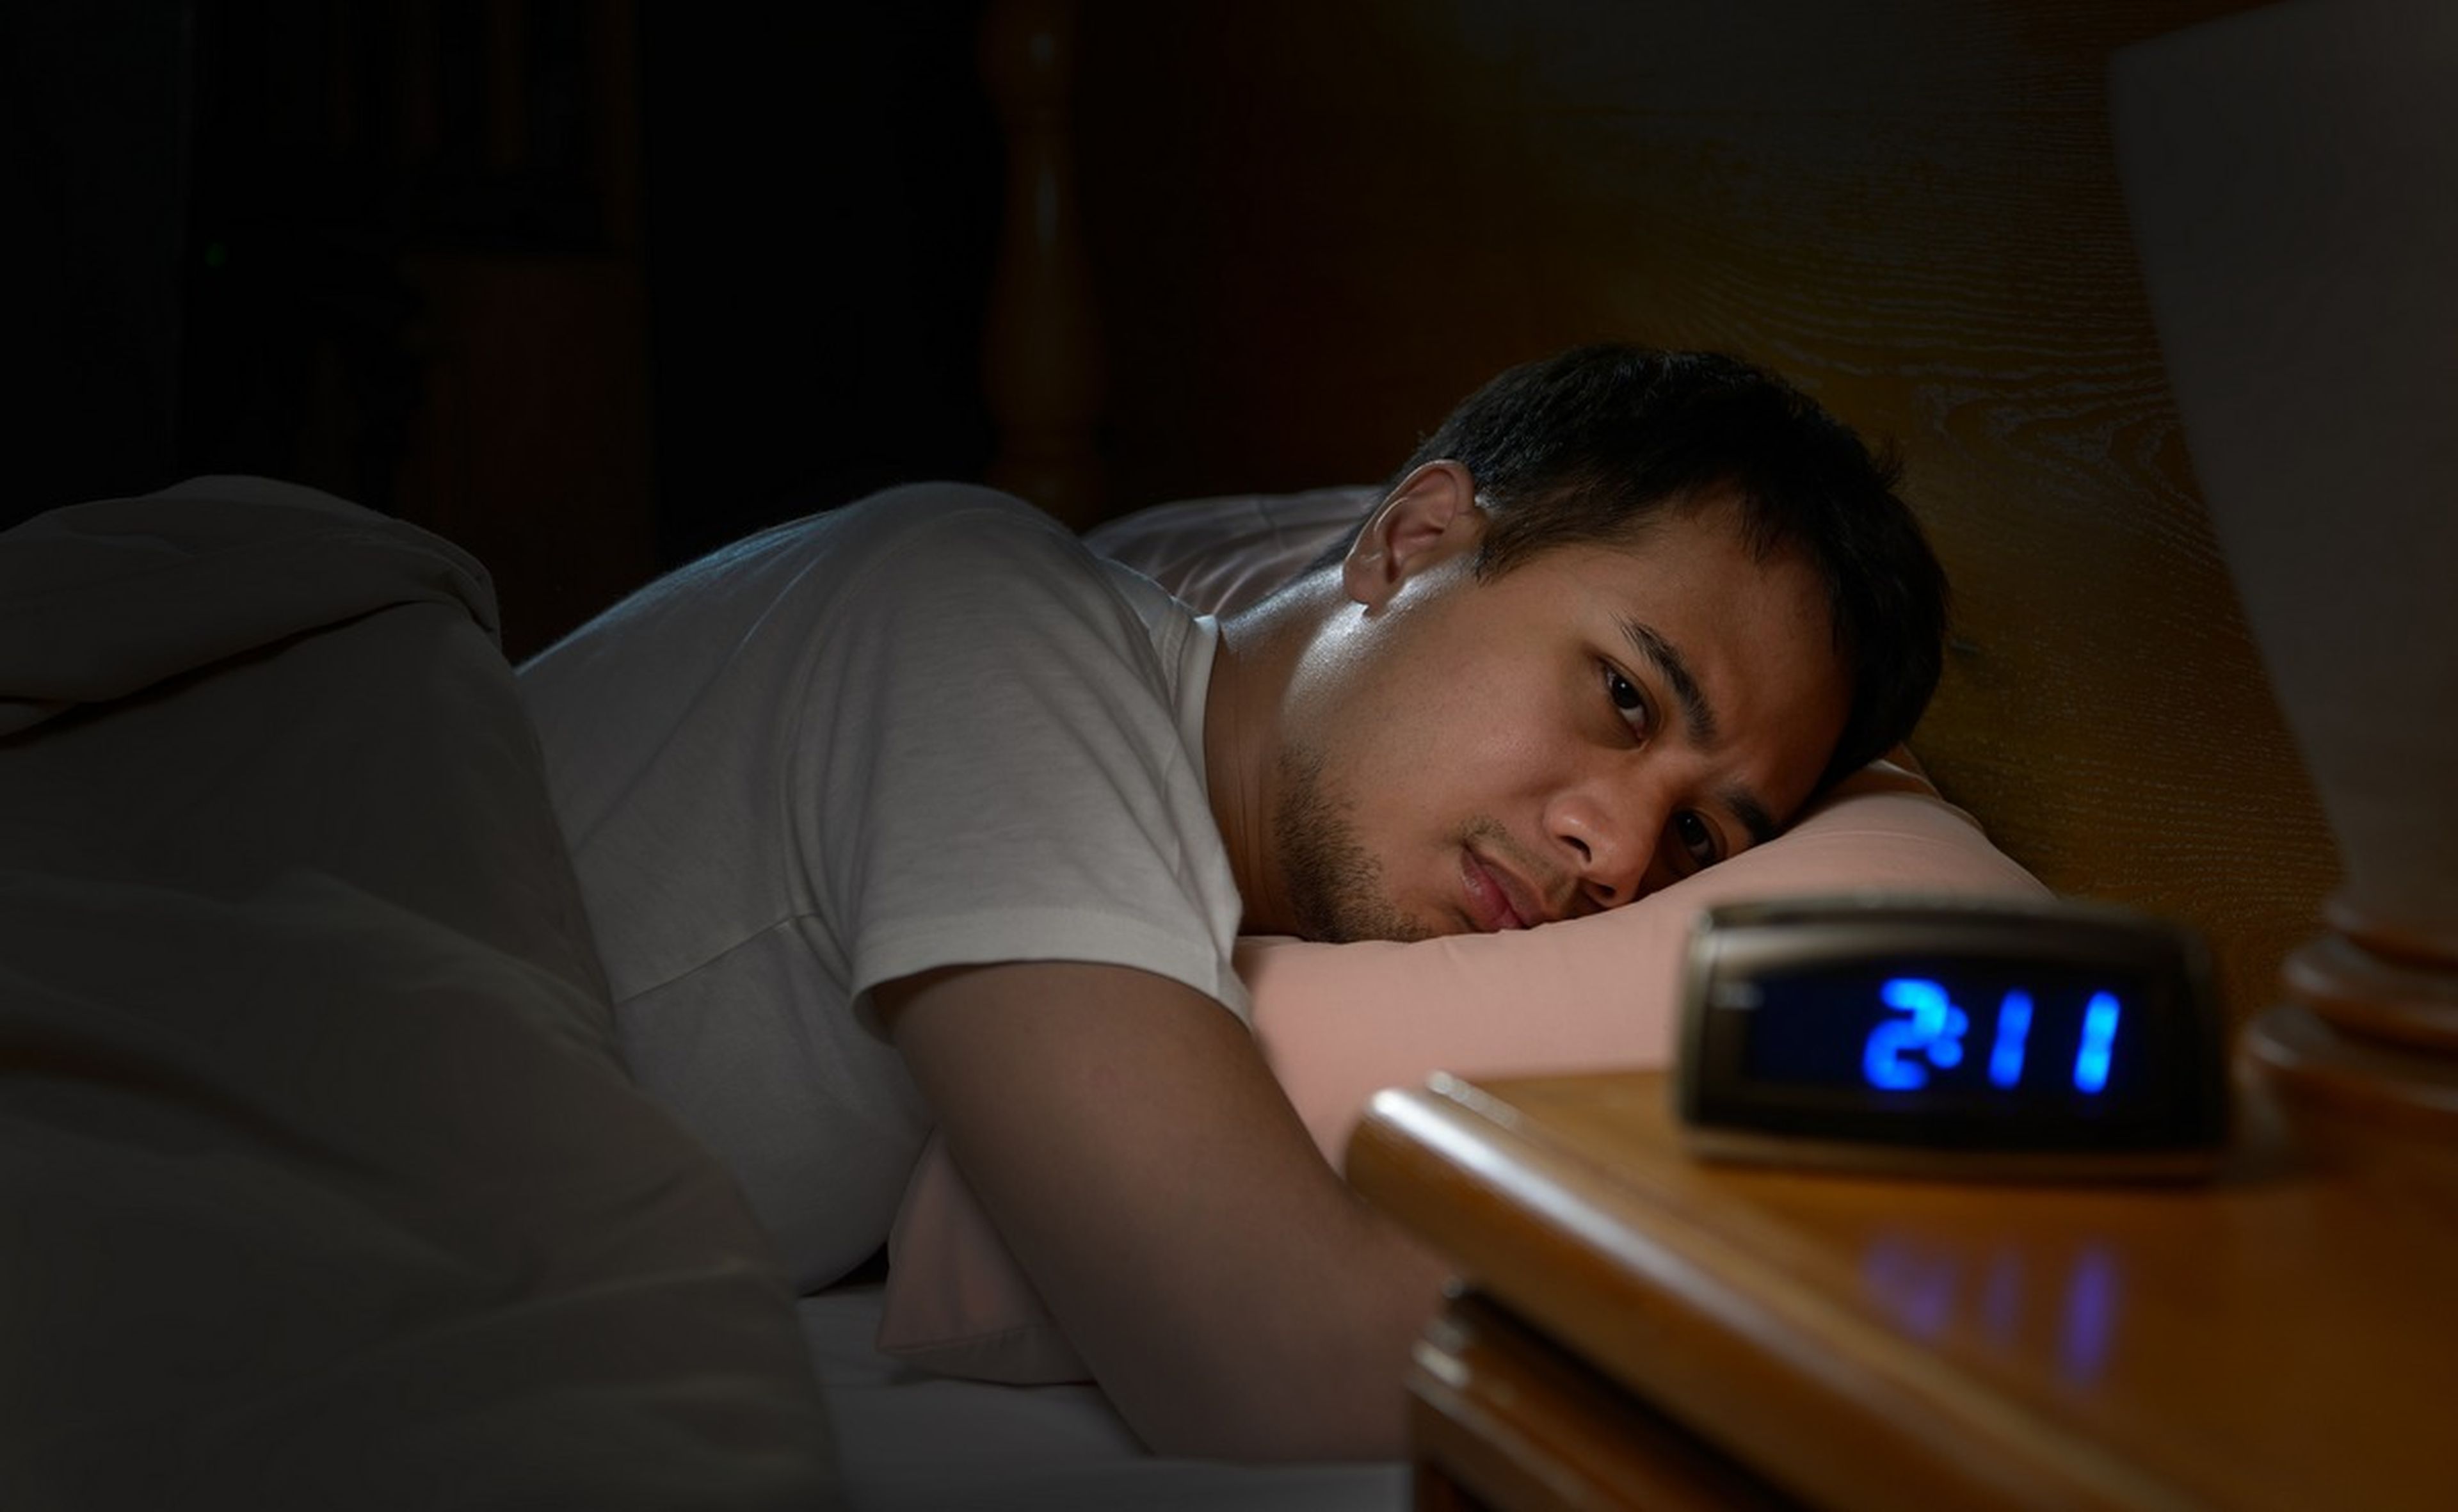 Dormir poco te vuelve antisocial y te hace ser más solitario